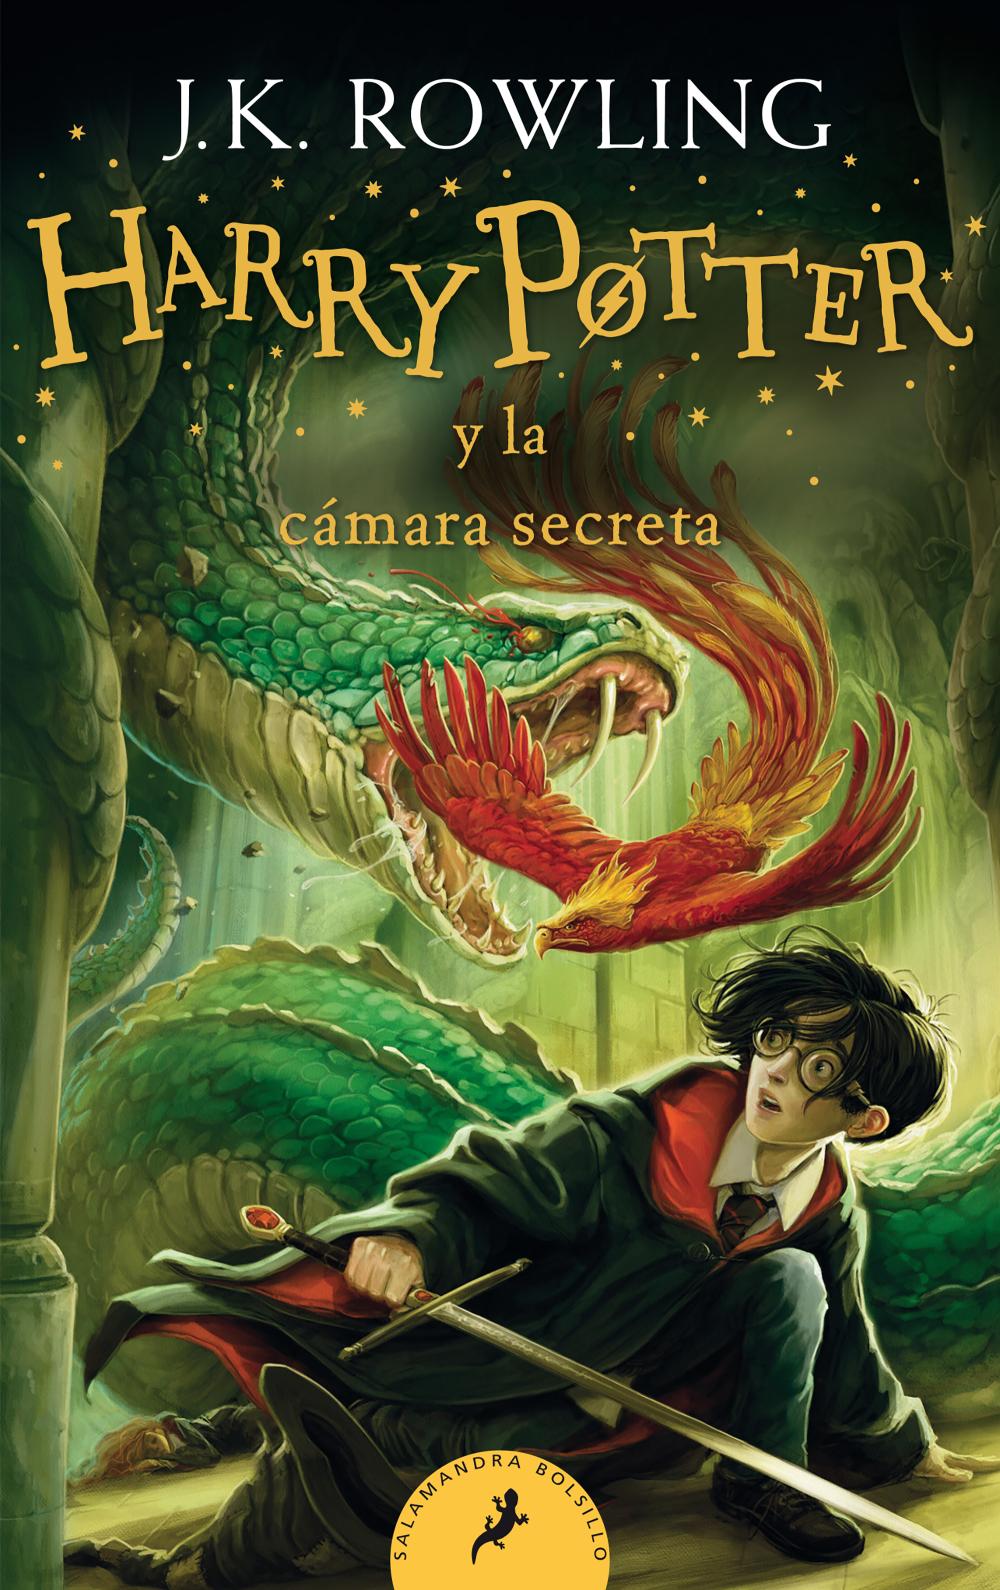 Harry Potter y la cámara secreta (Ed. bolsillo) (Harry Potter 2)